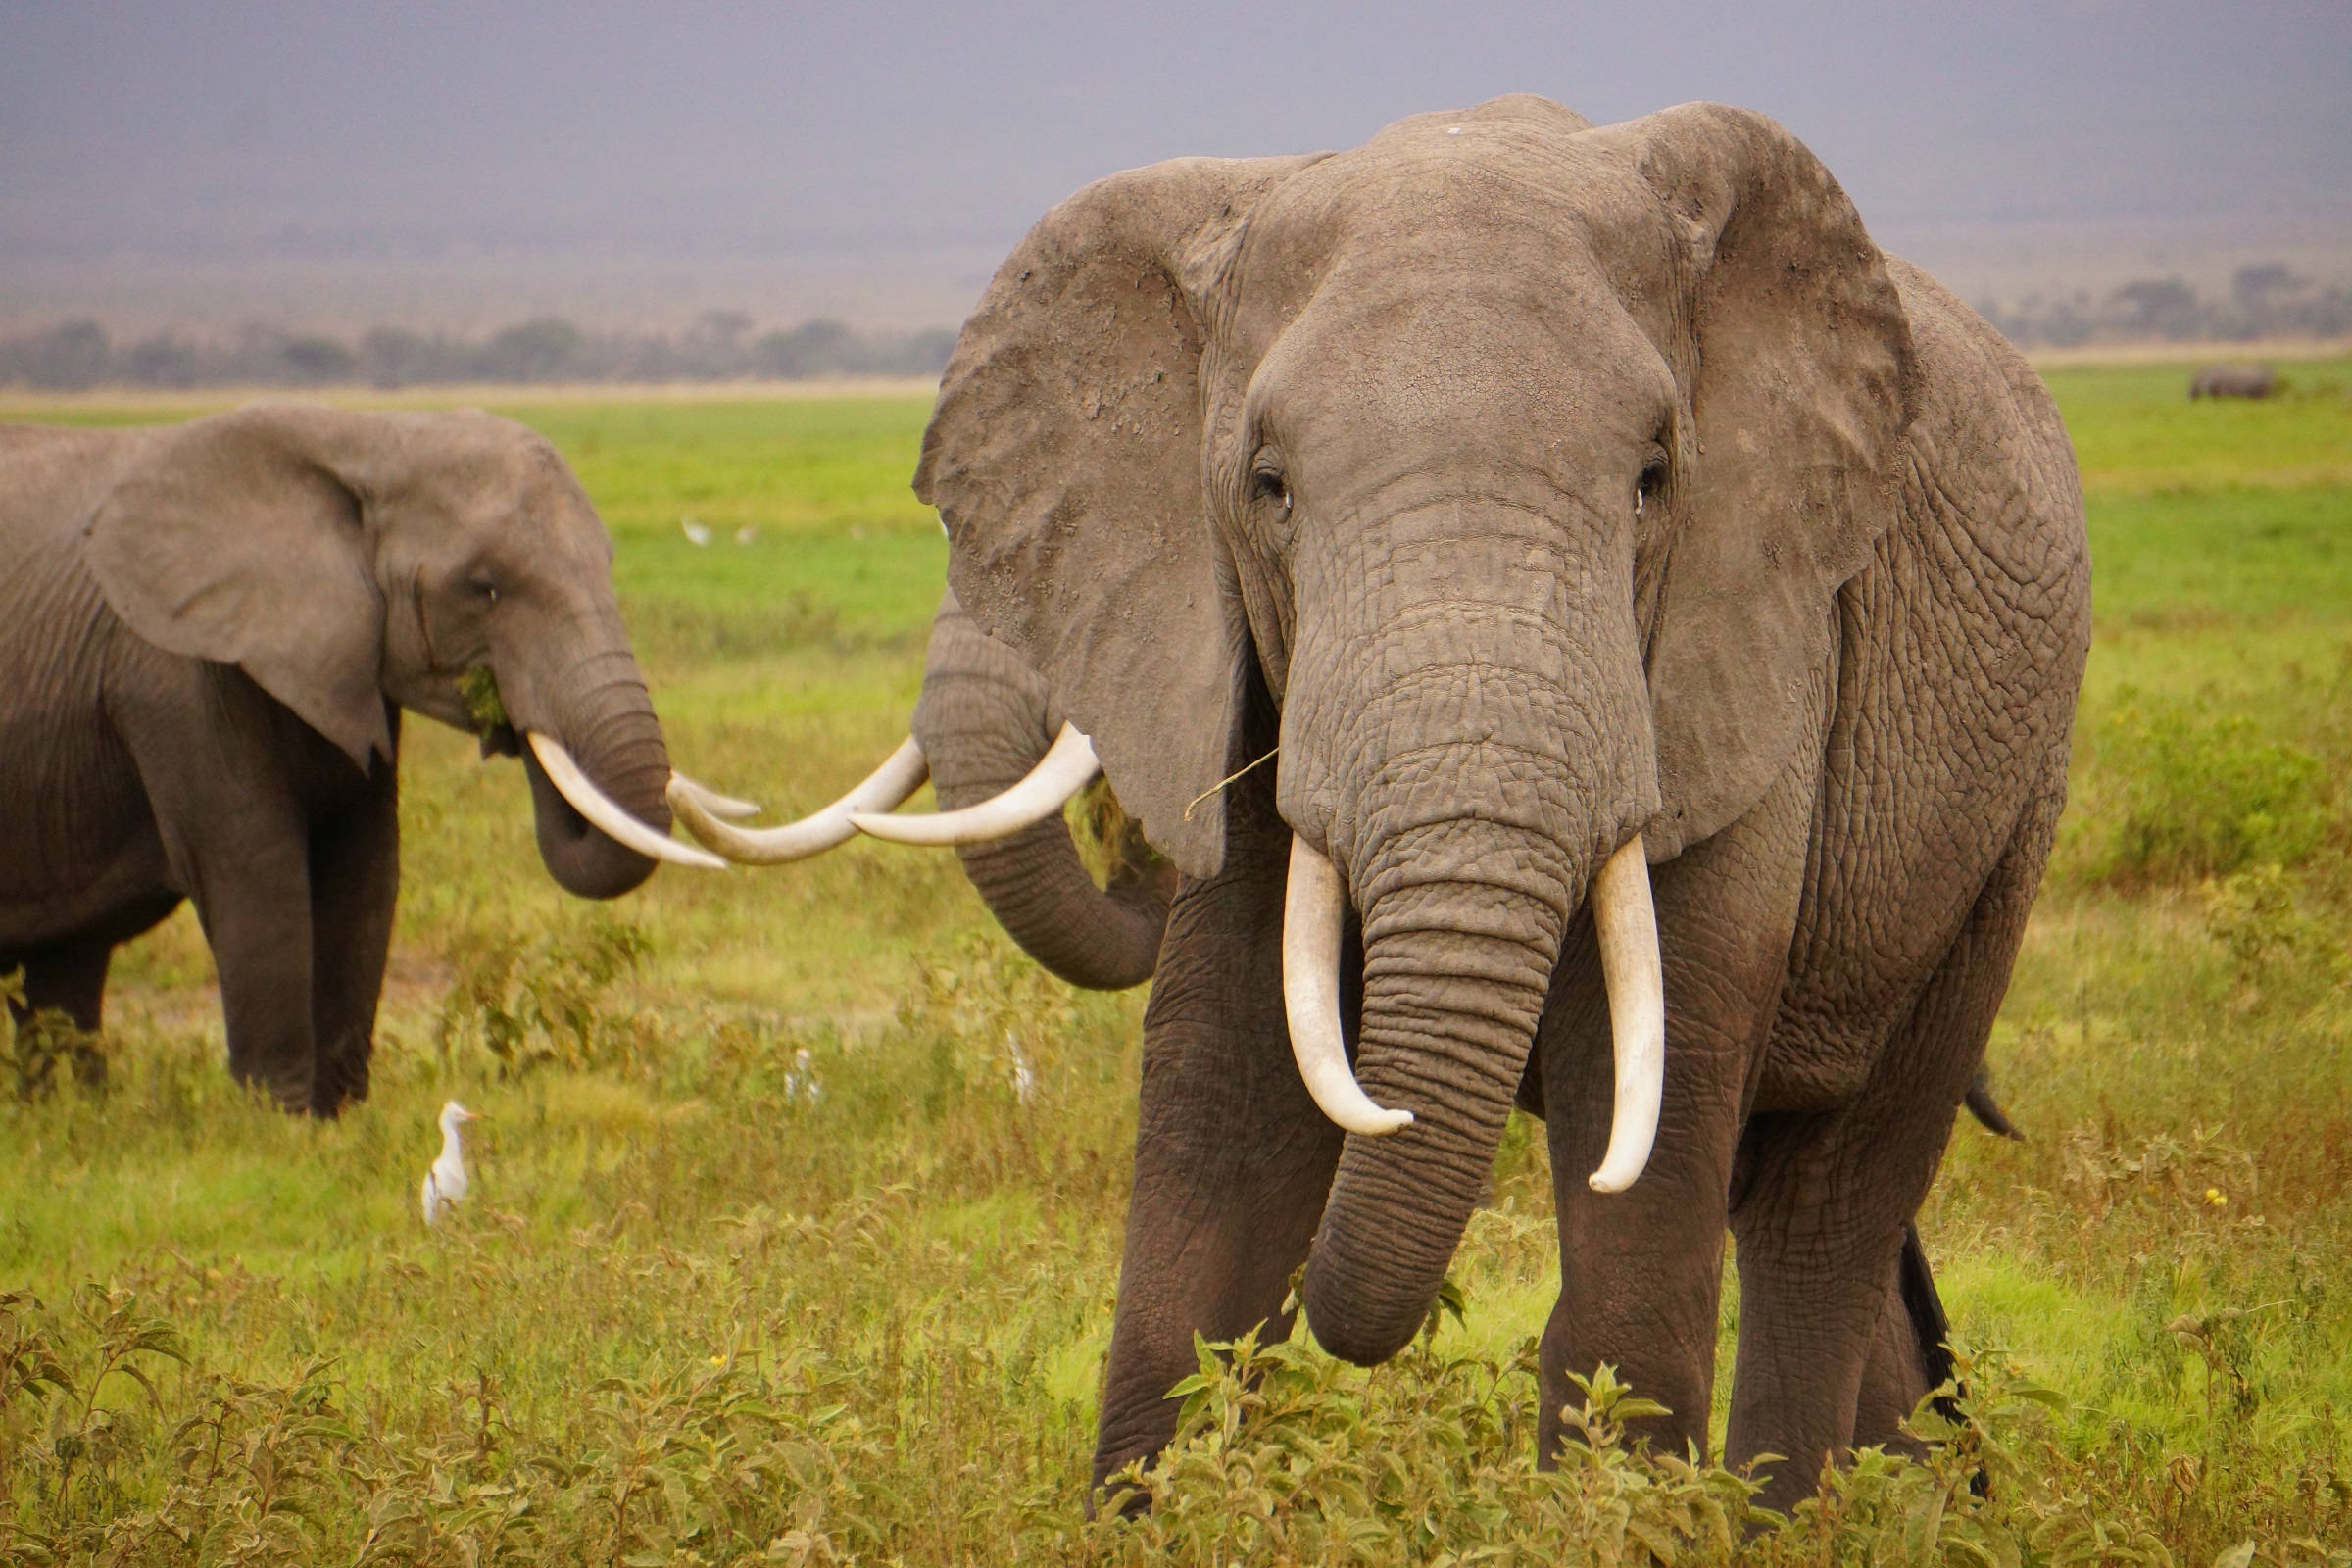 Elephant present. Бивни африканского слона. Хобот и бивни слона. Африканский слон с большими бивнями. Слон с длинными бивнями.